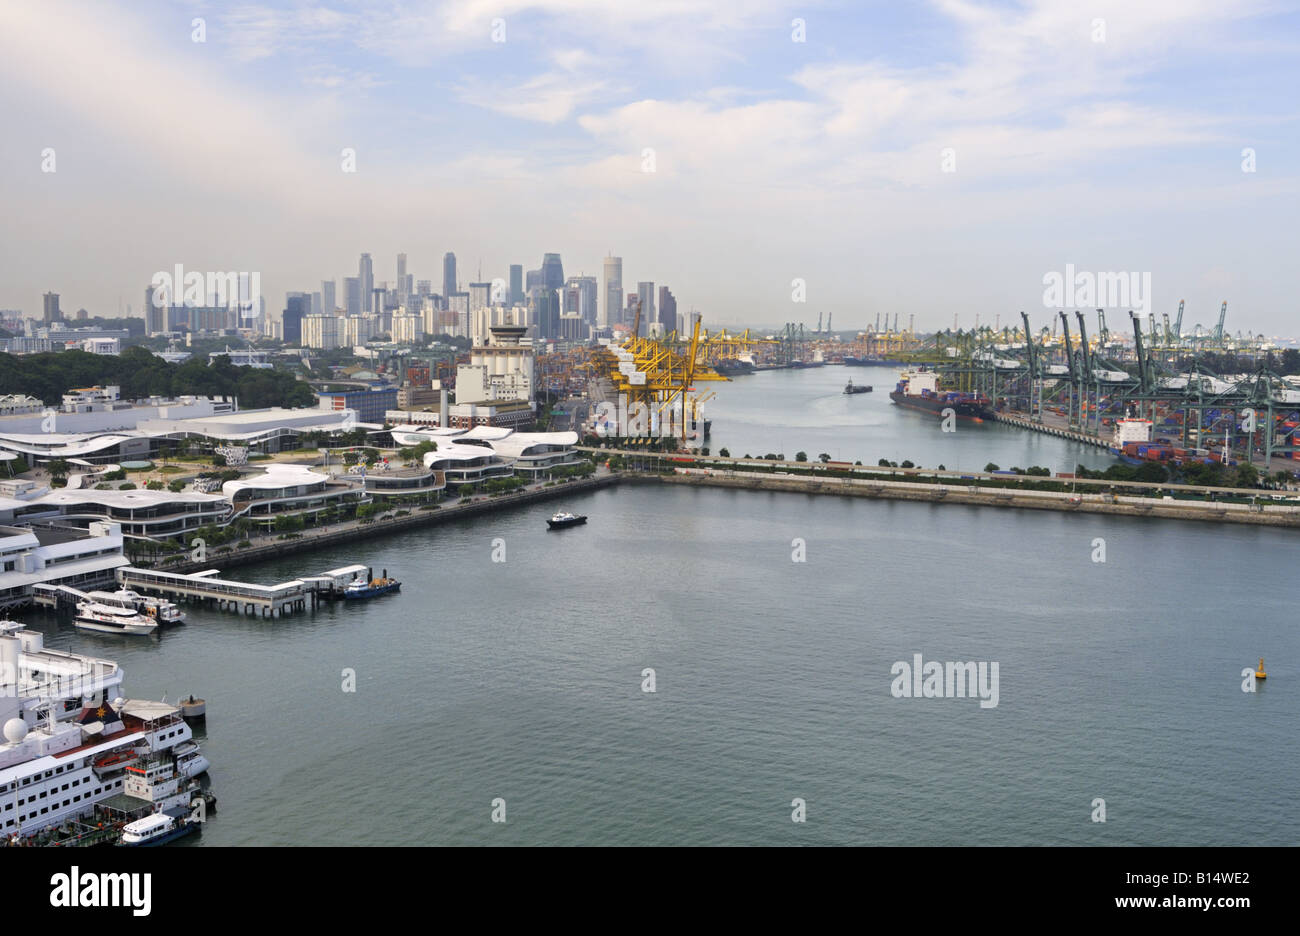 Hafen von Singapur mit Vivo City Mall auf der linken Keppel terminal in der Mitte und Barni-Terminals auf der rechten Seite. Stockfoto